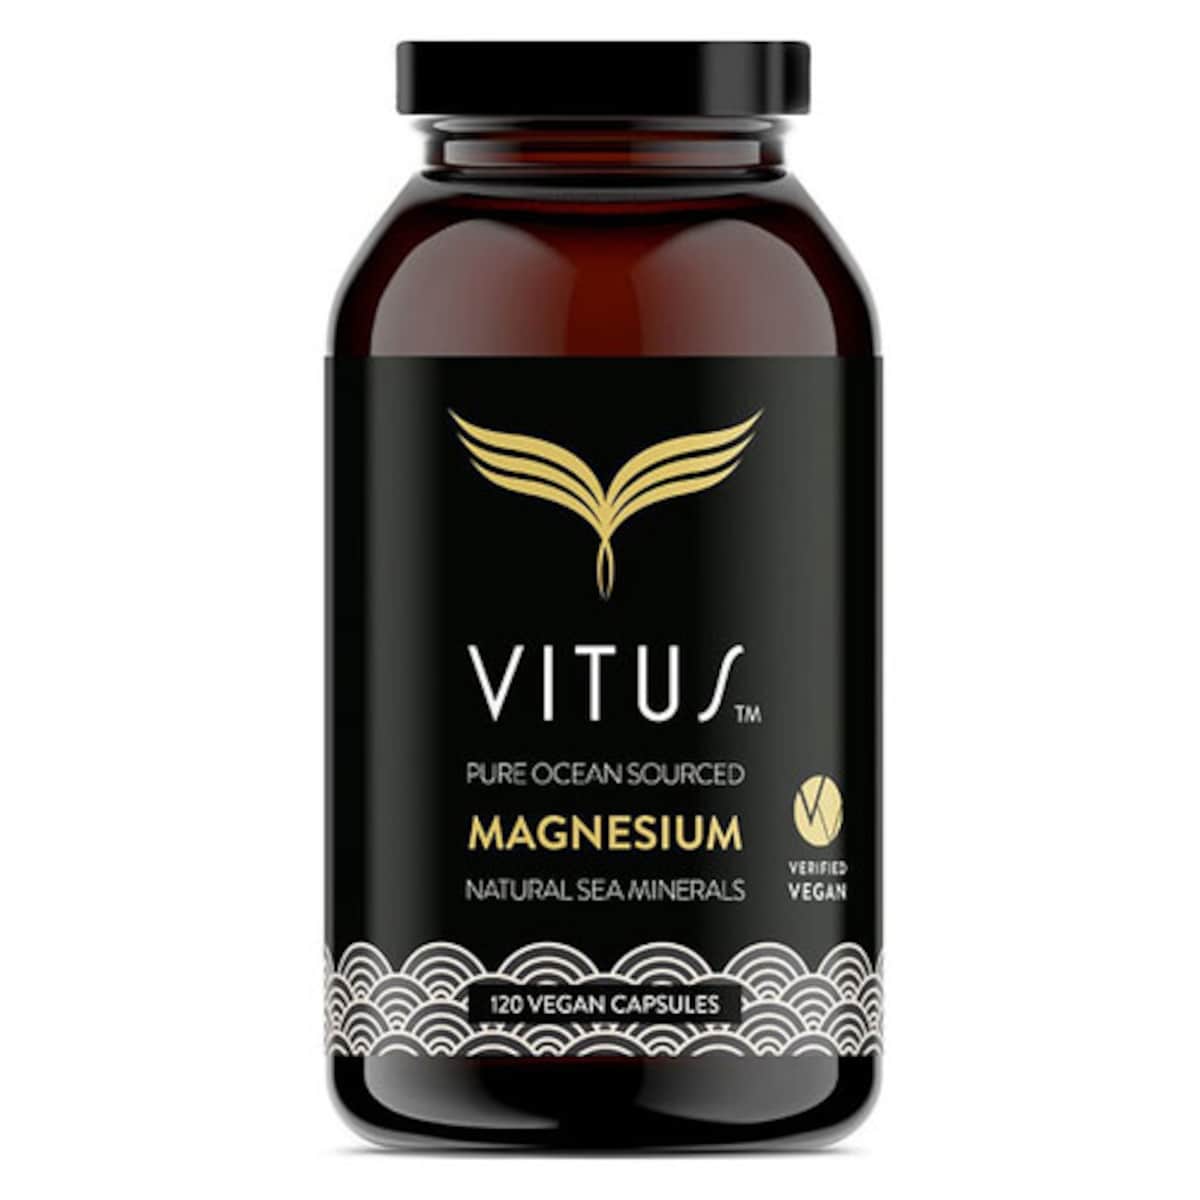 Vitus Magnesium 120 Vegan Capsules